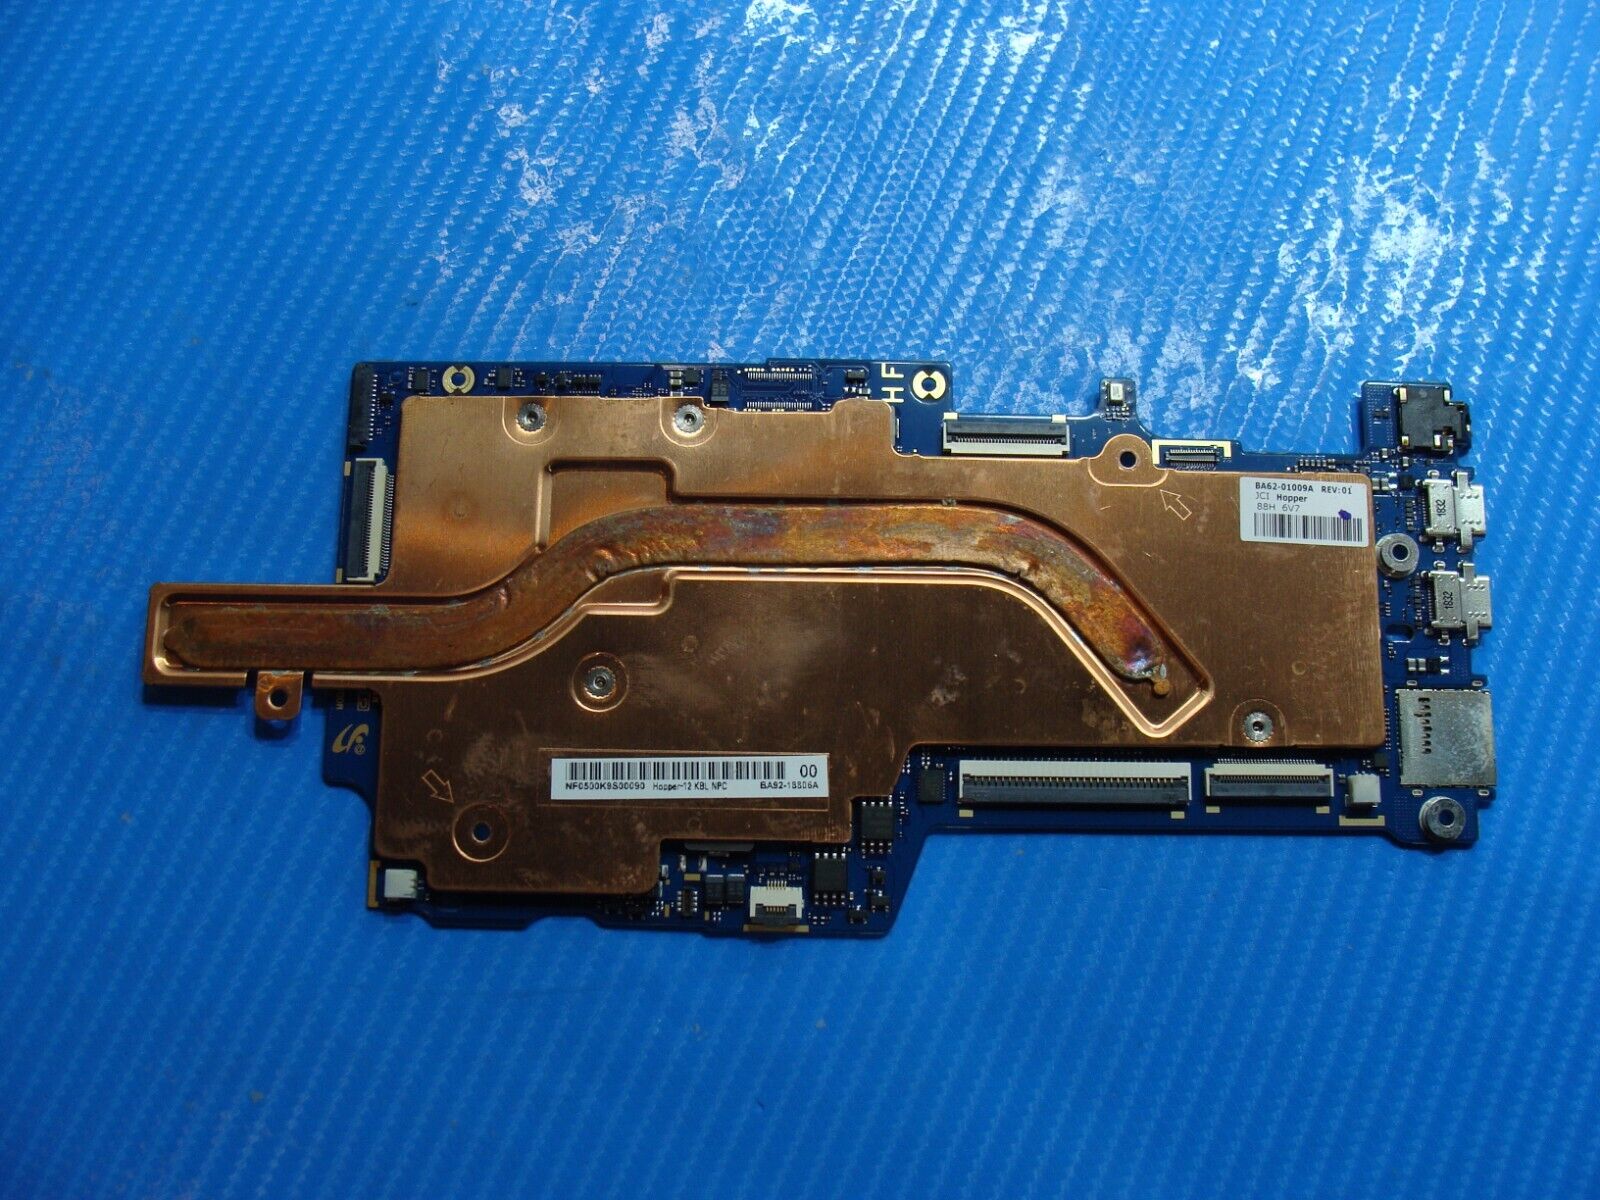 Samsung Chromebook Plus XE521QAB Celeron 3965Y 1.5GHz Motherboard BA92-18806B